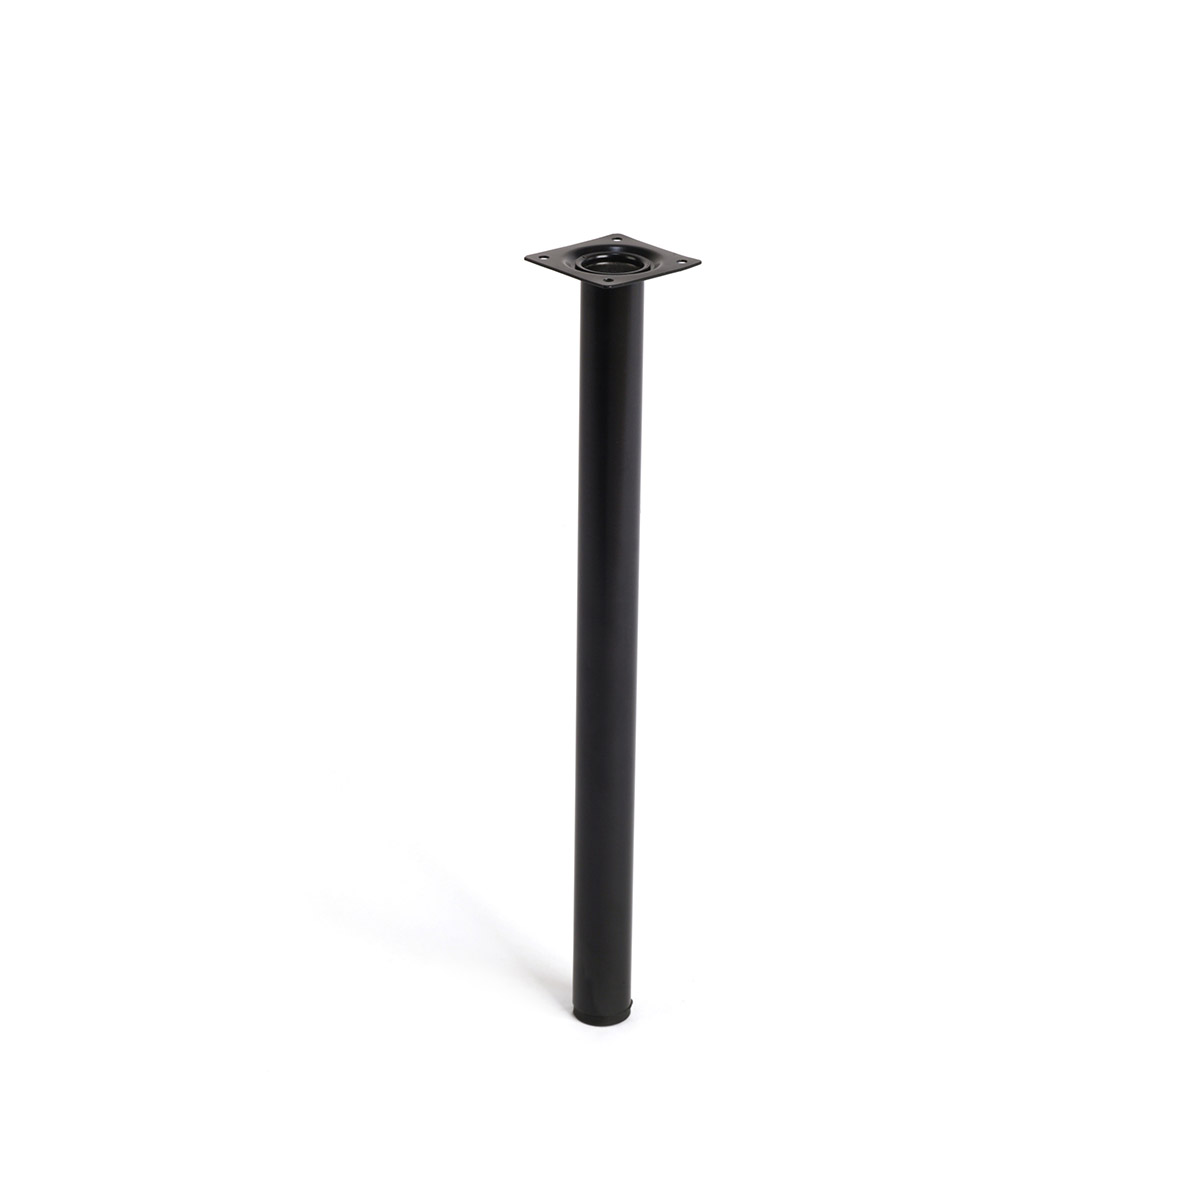 Pata de acero cilíndrica con una altura de 400 mm y acabada en negro. Dimensiones: 30x30x400 mm